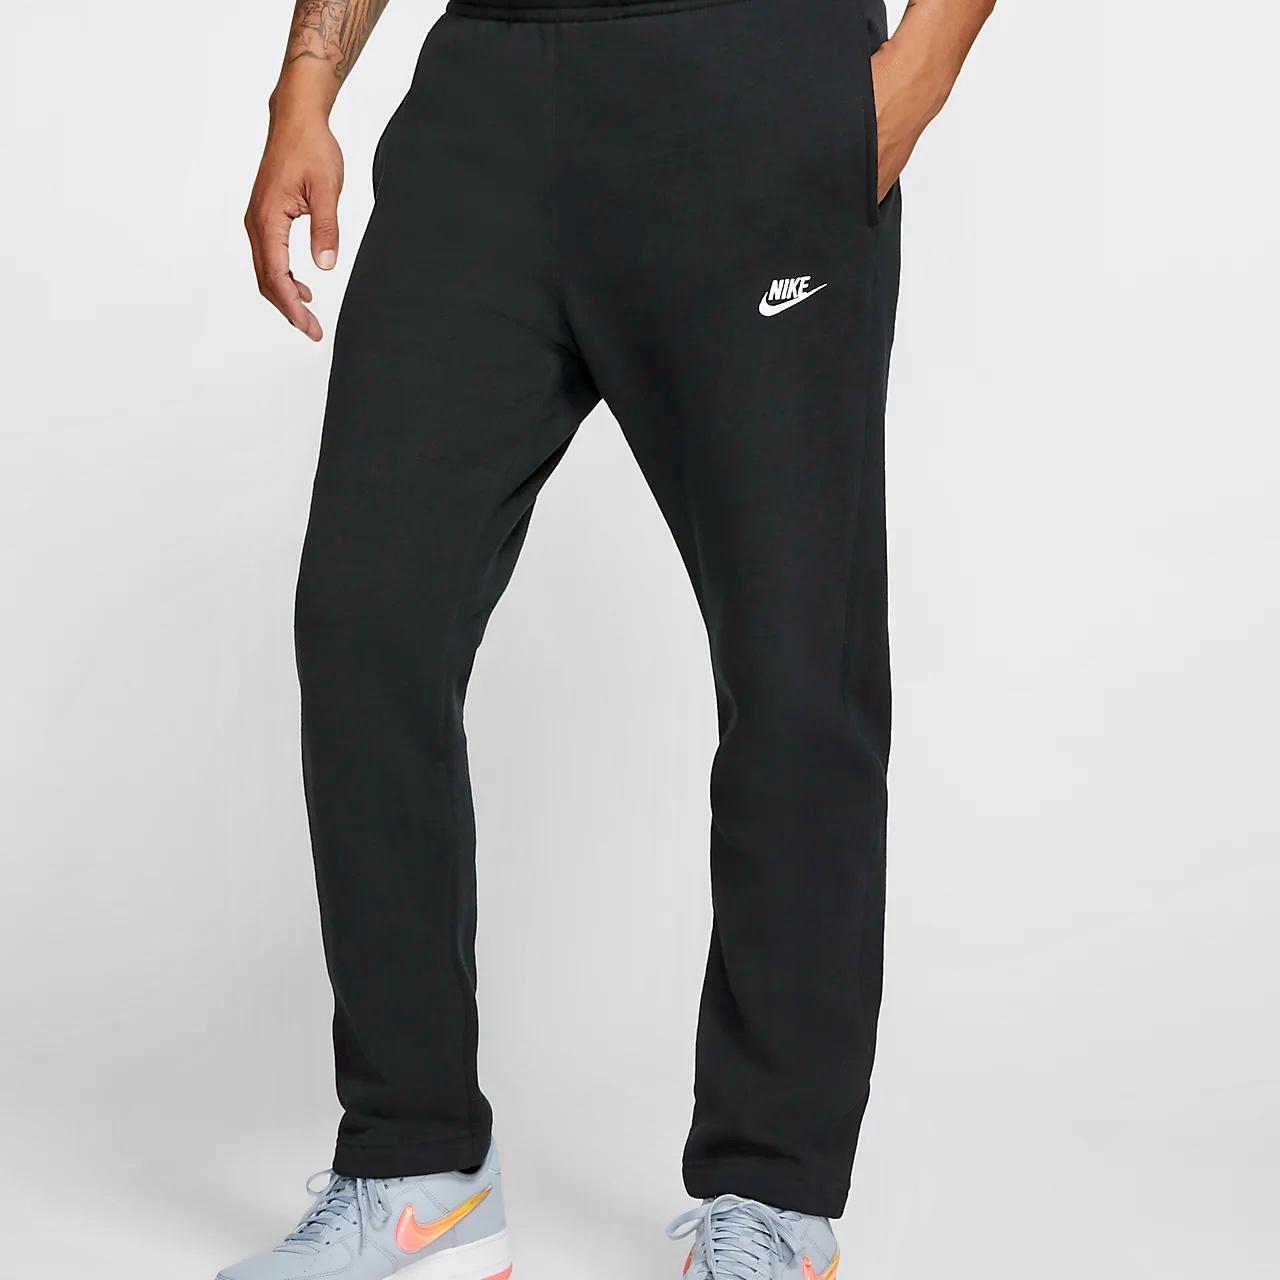 ‘Black’ Nike Wide Bottom Fleece Sweatpants • Full... - Depop